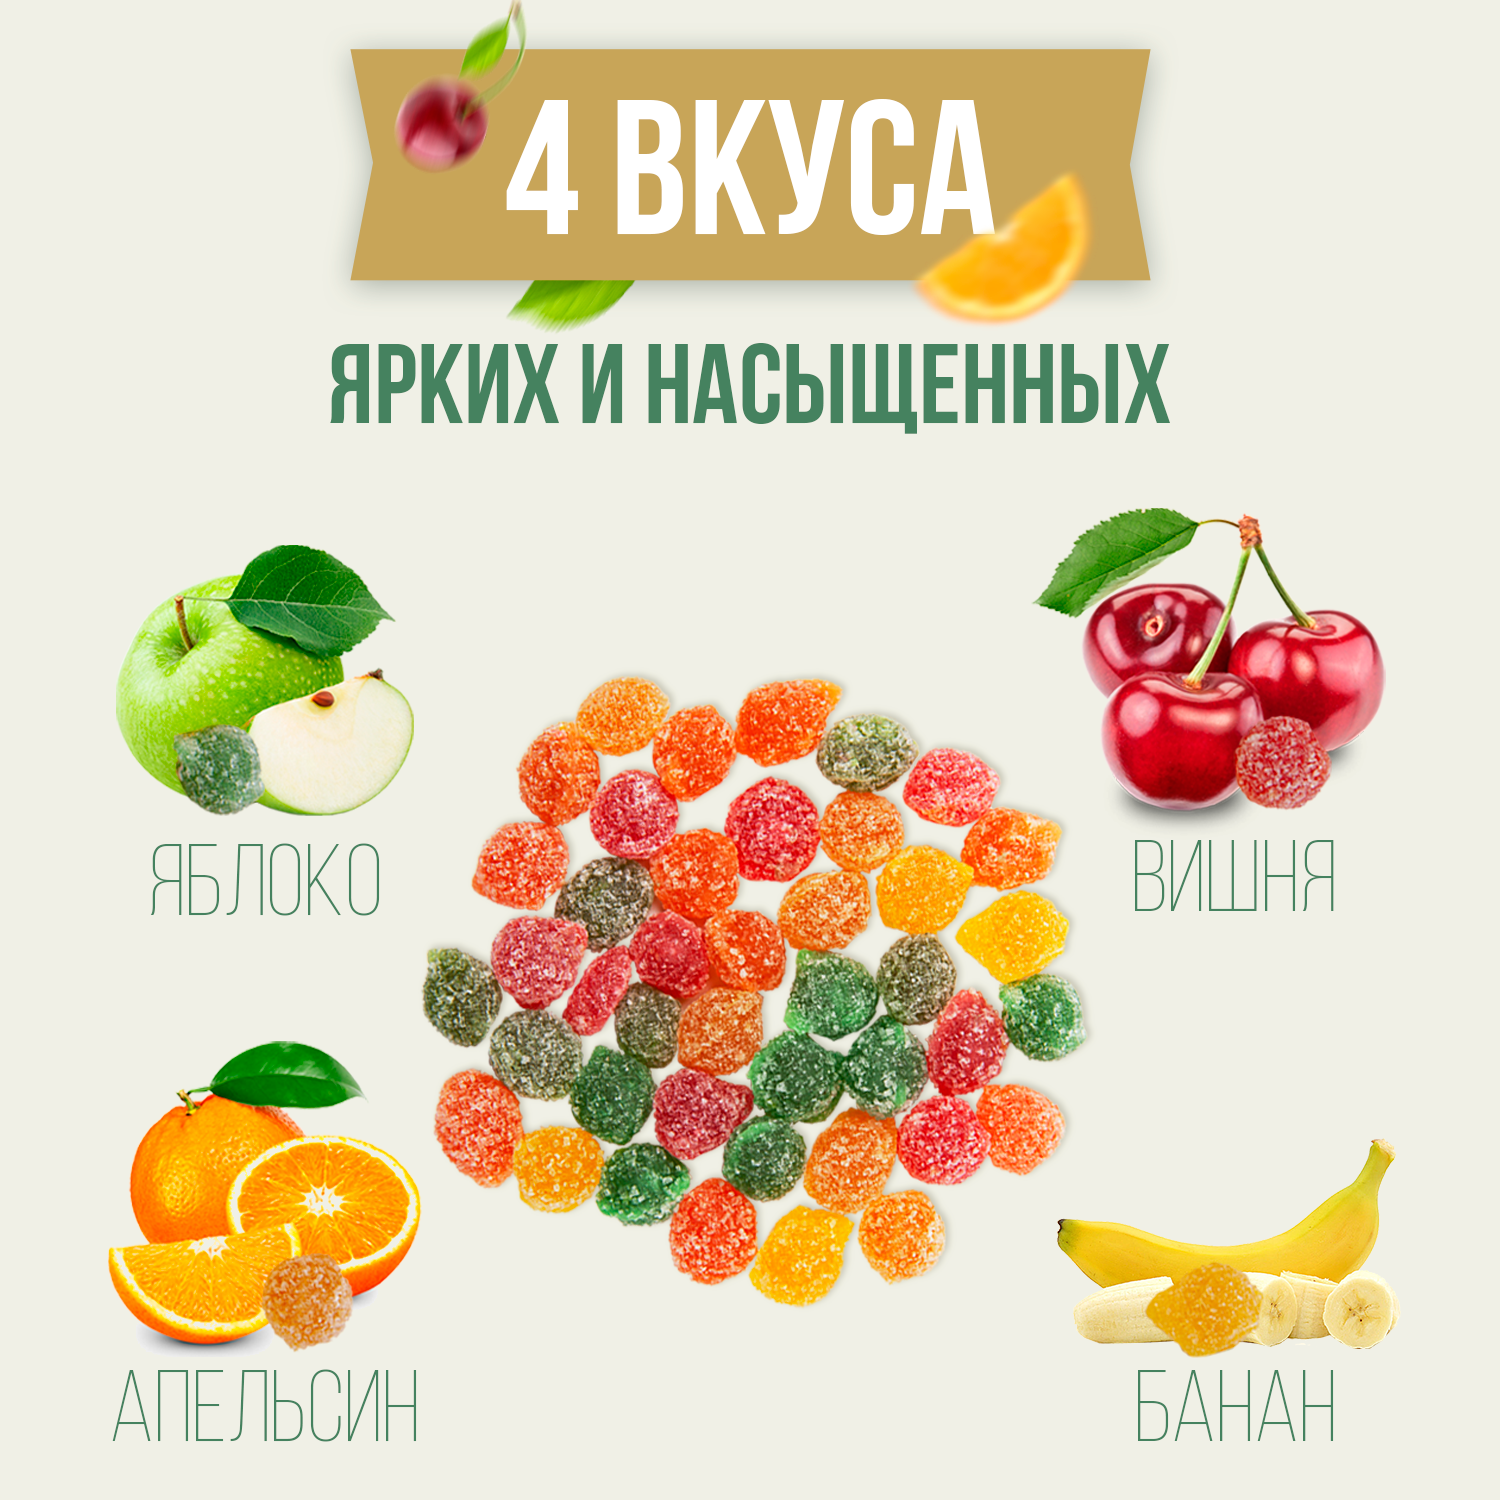 Монпансье фруктовые конфеты леденцы 1000гр - фотография № 2